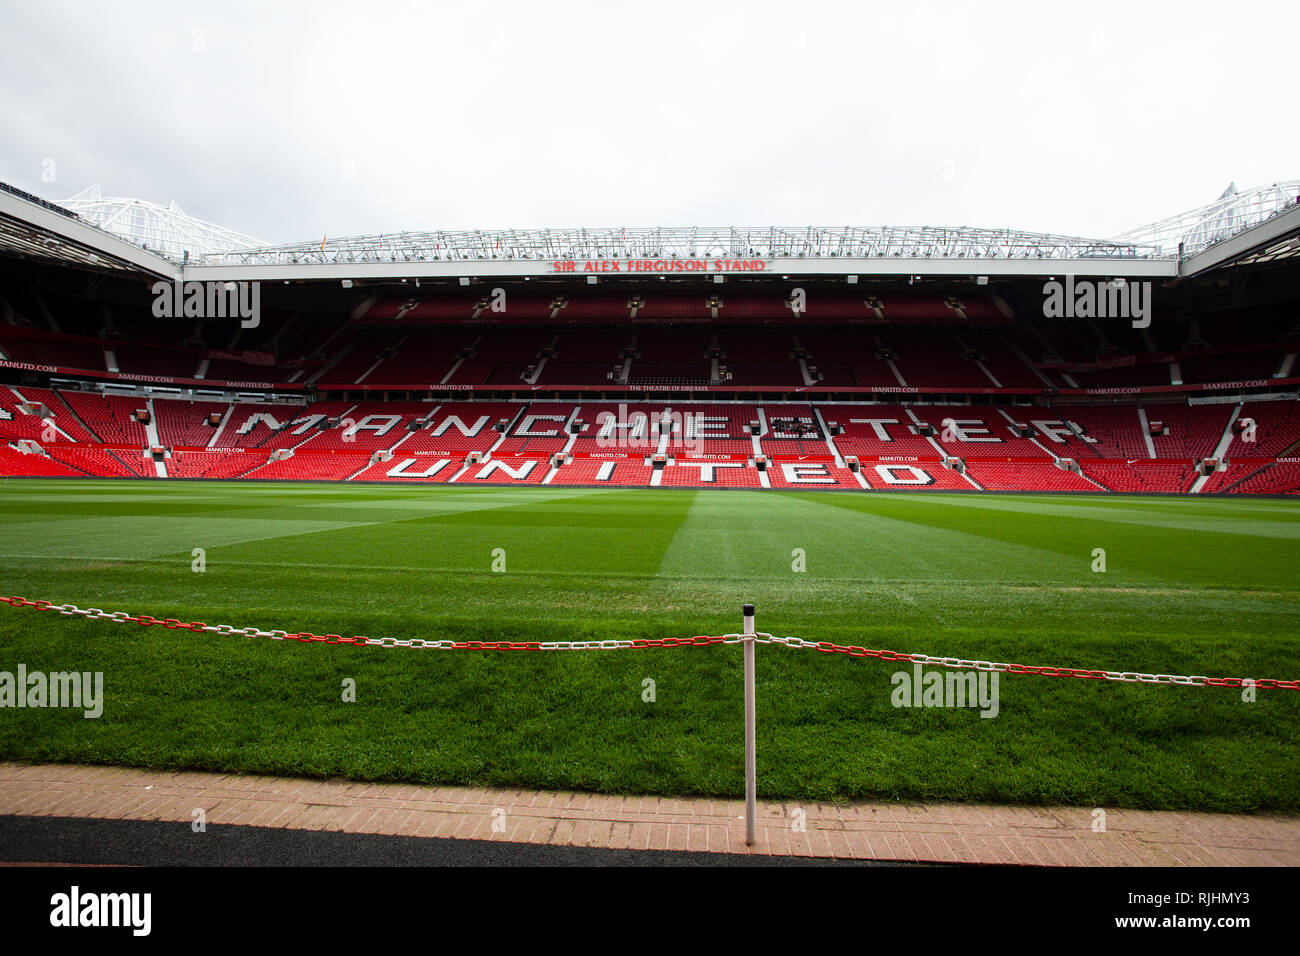 Vue à l'intérieur du stade de football Old Trafford de Manchester United "Théâtre des rêves" sur un jour de match Banque D'Images